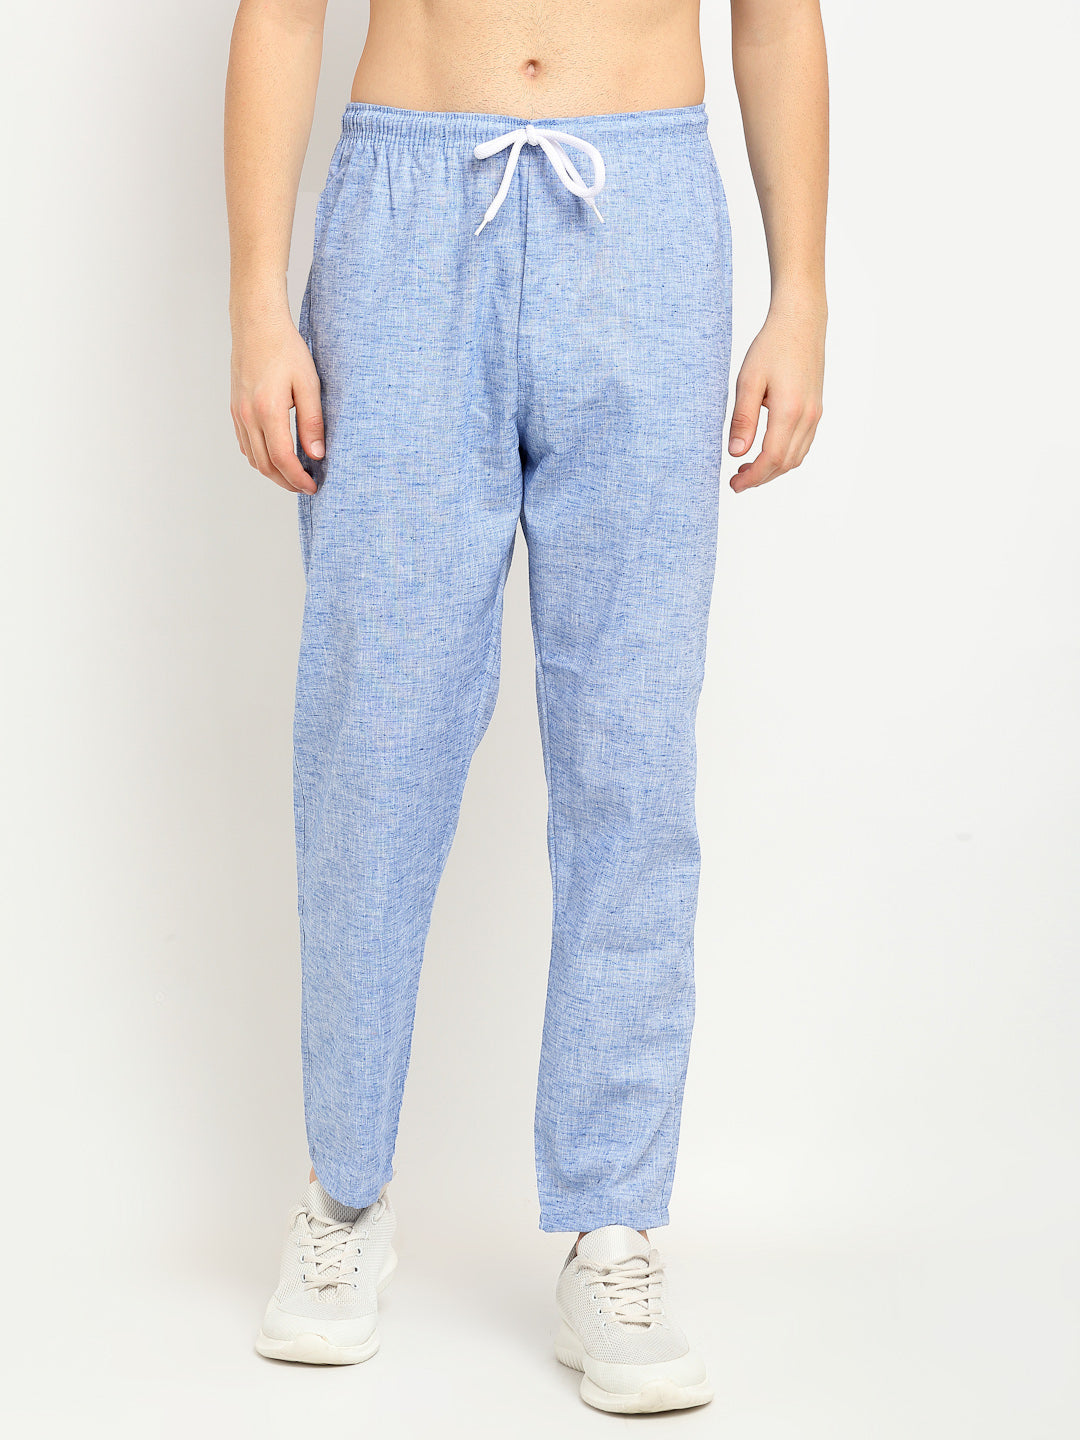 Men's Blue Linen Cotton Track Pants ( JOG 021Blue ) - Jainish